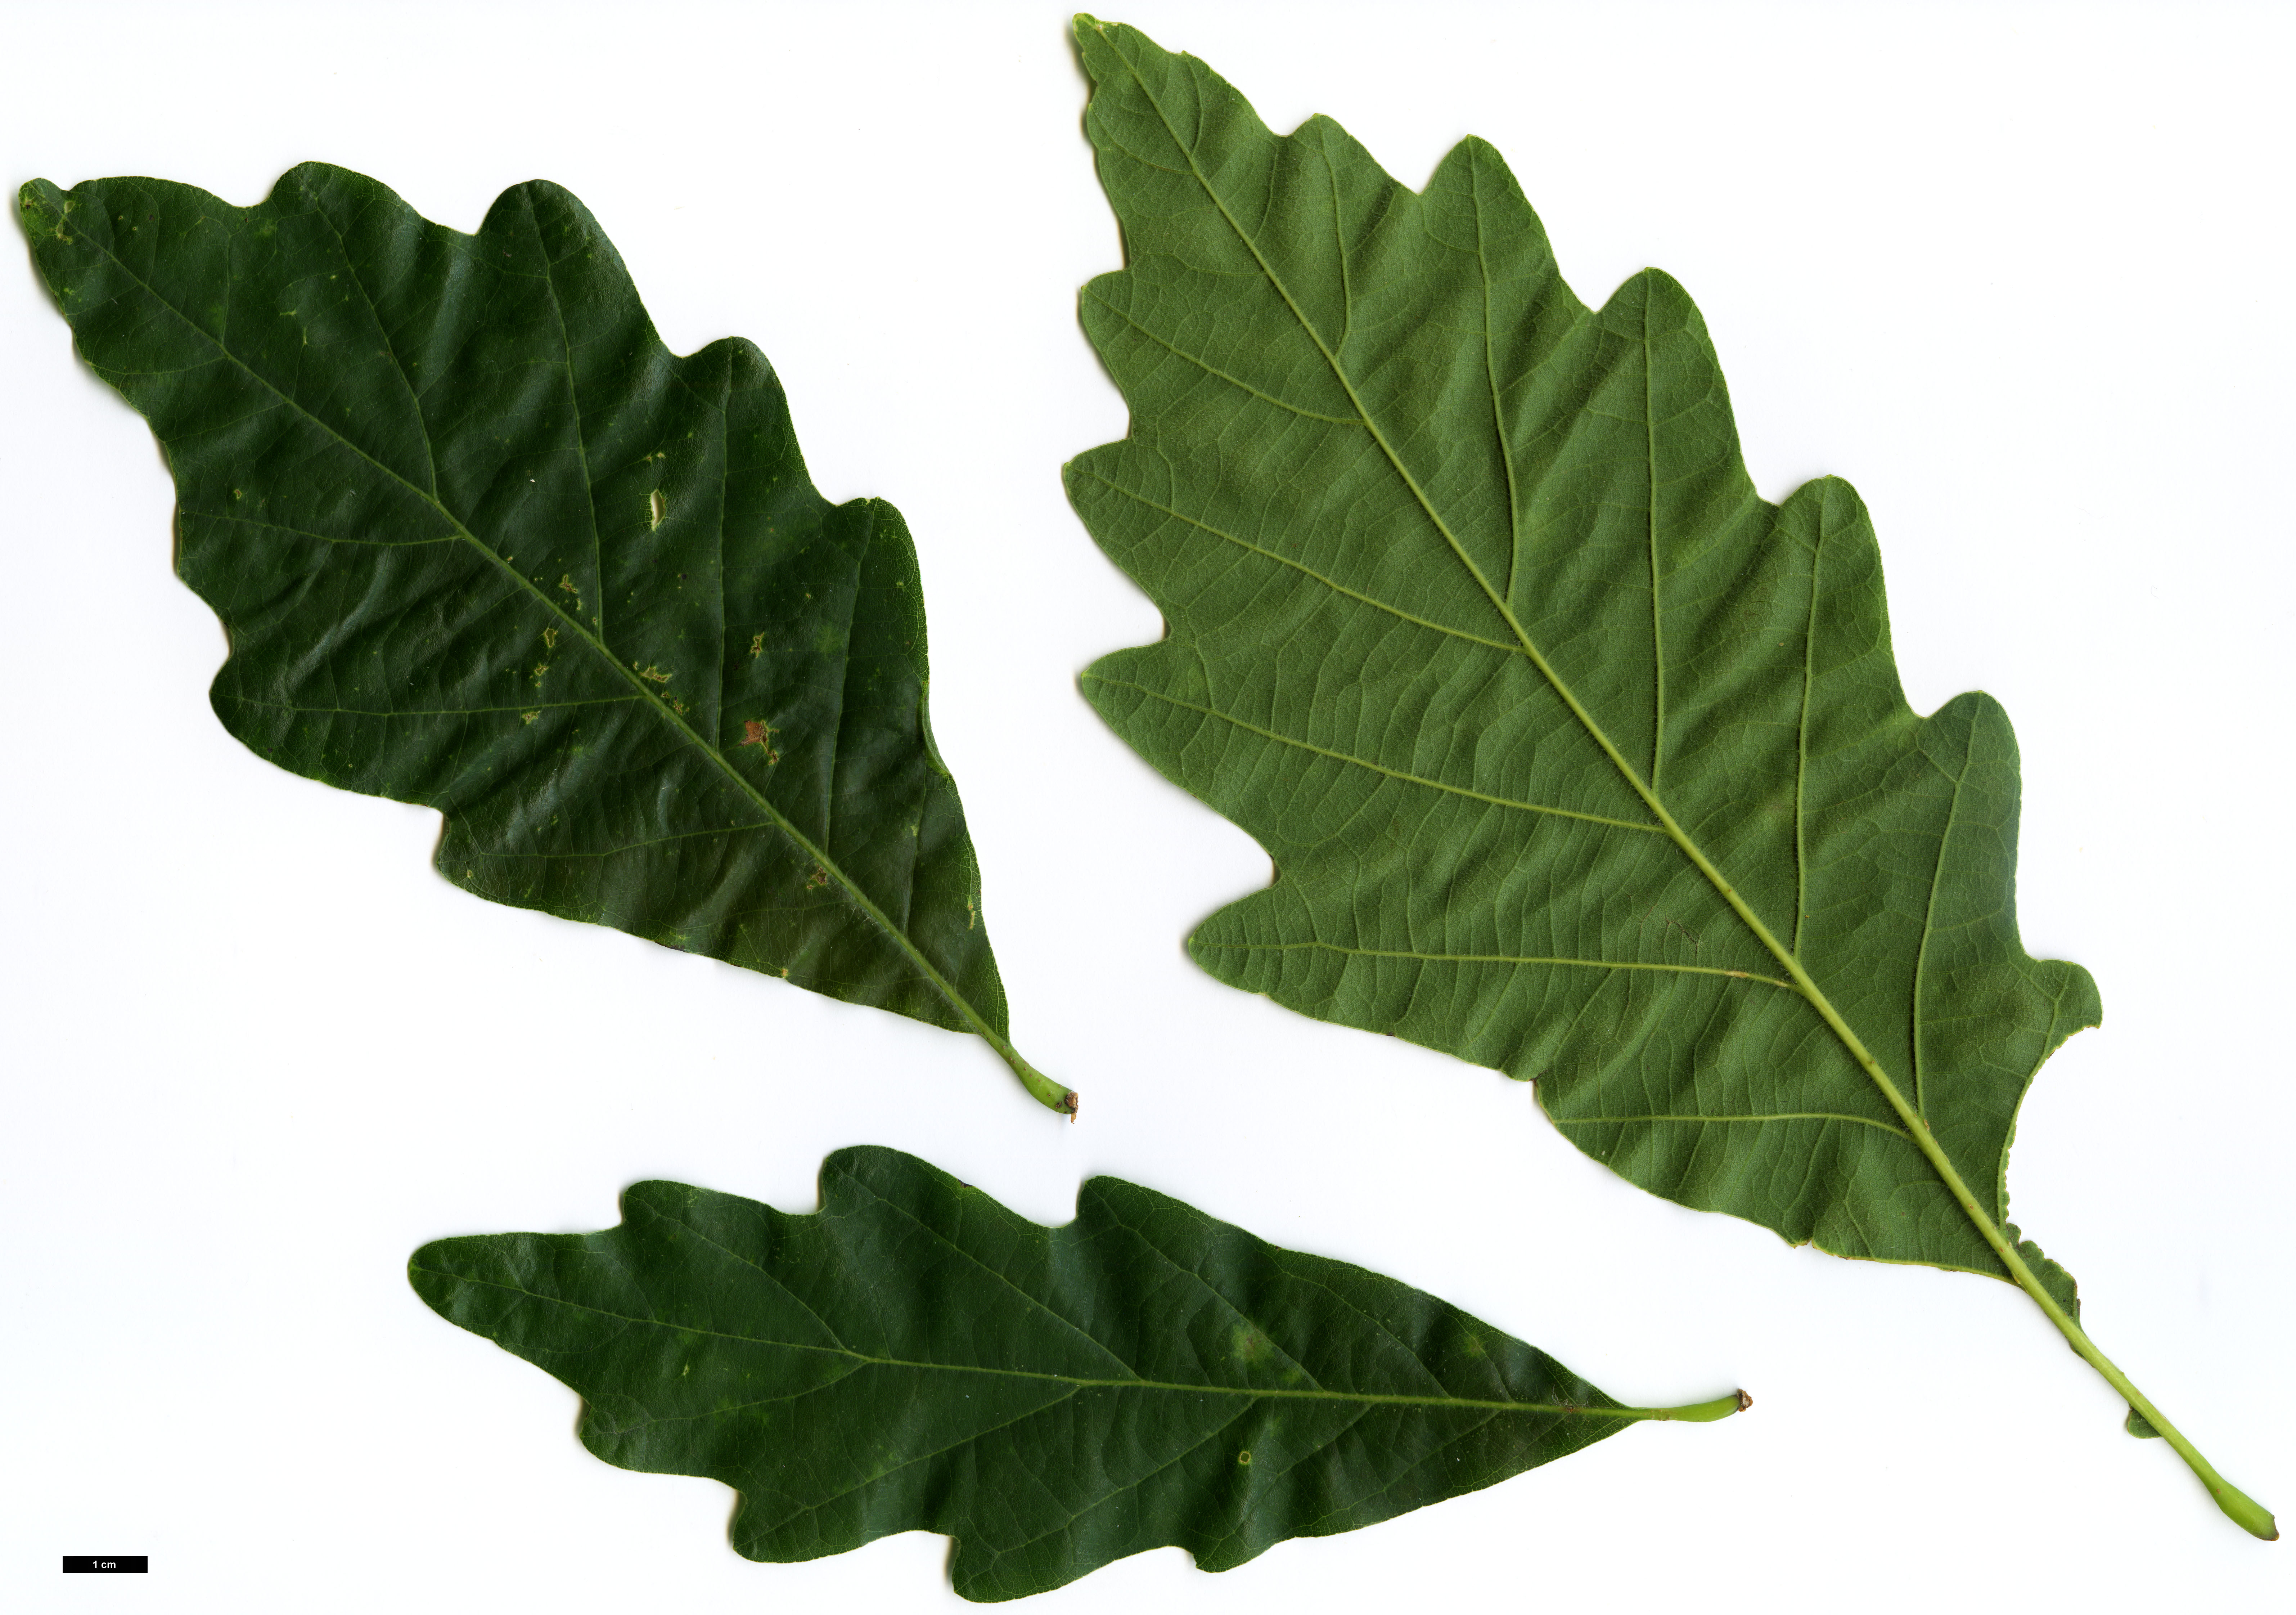 High resolution image: Family: Fagaceae - Genus: Quercus - Taxon: ×saulii (Q.alba × Q.montana)